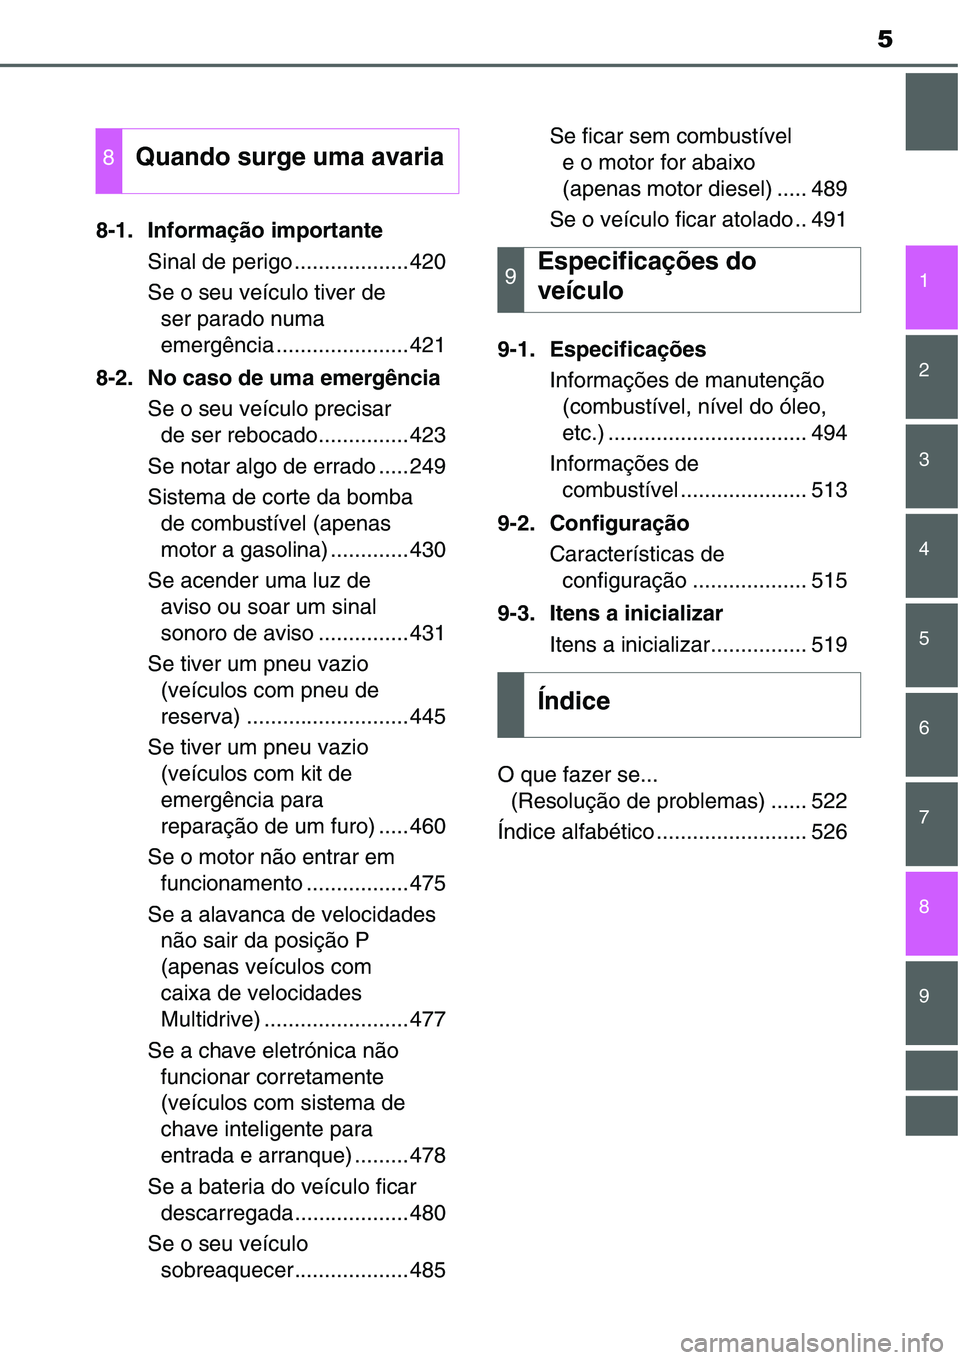 TOYOTA YARIS HATCHBACK 2015  Manual de utilização (in Portuguese) 5
1
7
8 6 5 4 3 2
9
8-1. Informação importante
Sinal de perigo ...................420
Se o seu veículo tiver de 
ser parado numa 
emergência ......................421
8-2. No caso de uma emergênc